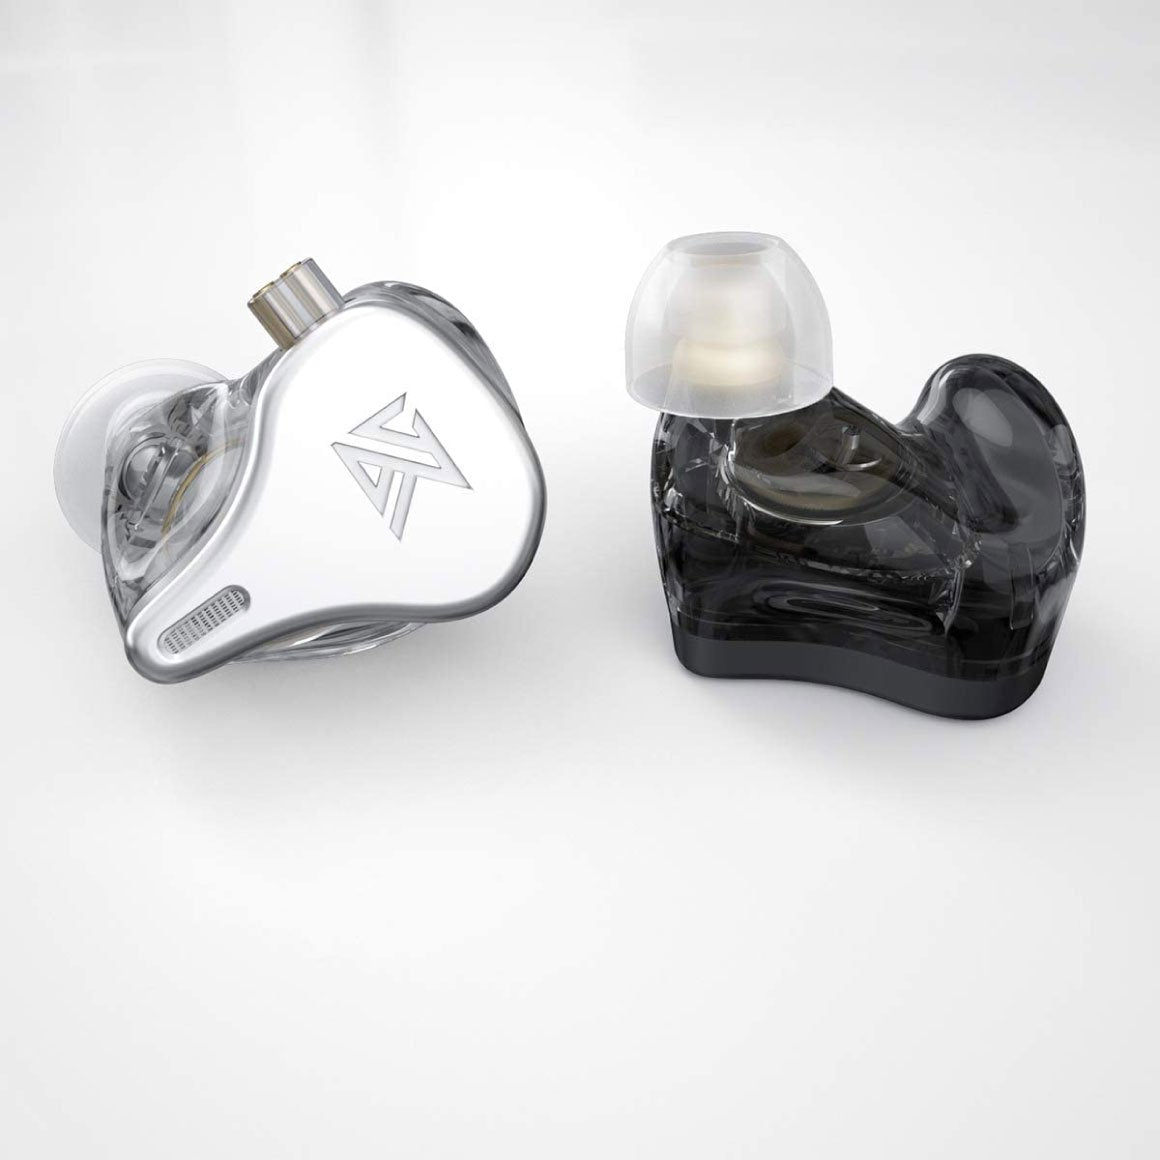 KZ DQ6 - Tapones para los oídos con monitor intrauditivo Triple Driver